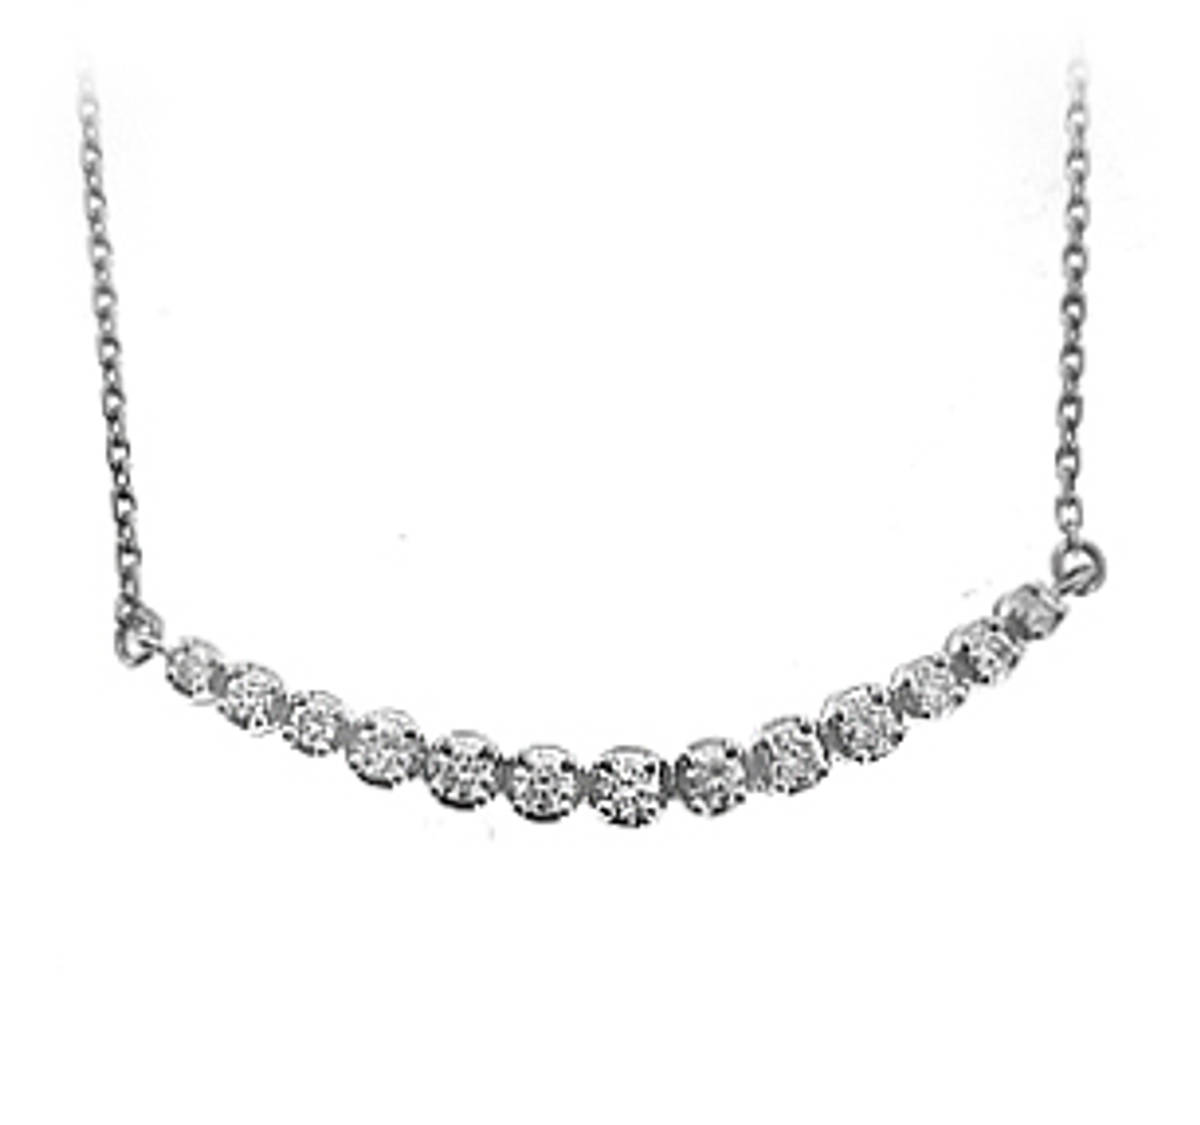 18k white gold brilliant cut diamond necklace
DETAILS
Carat: total diamond weight 0.60cts
 Pendant length 4cm Pendant width 0.8cm Drop 19cm